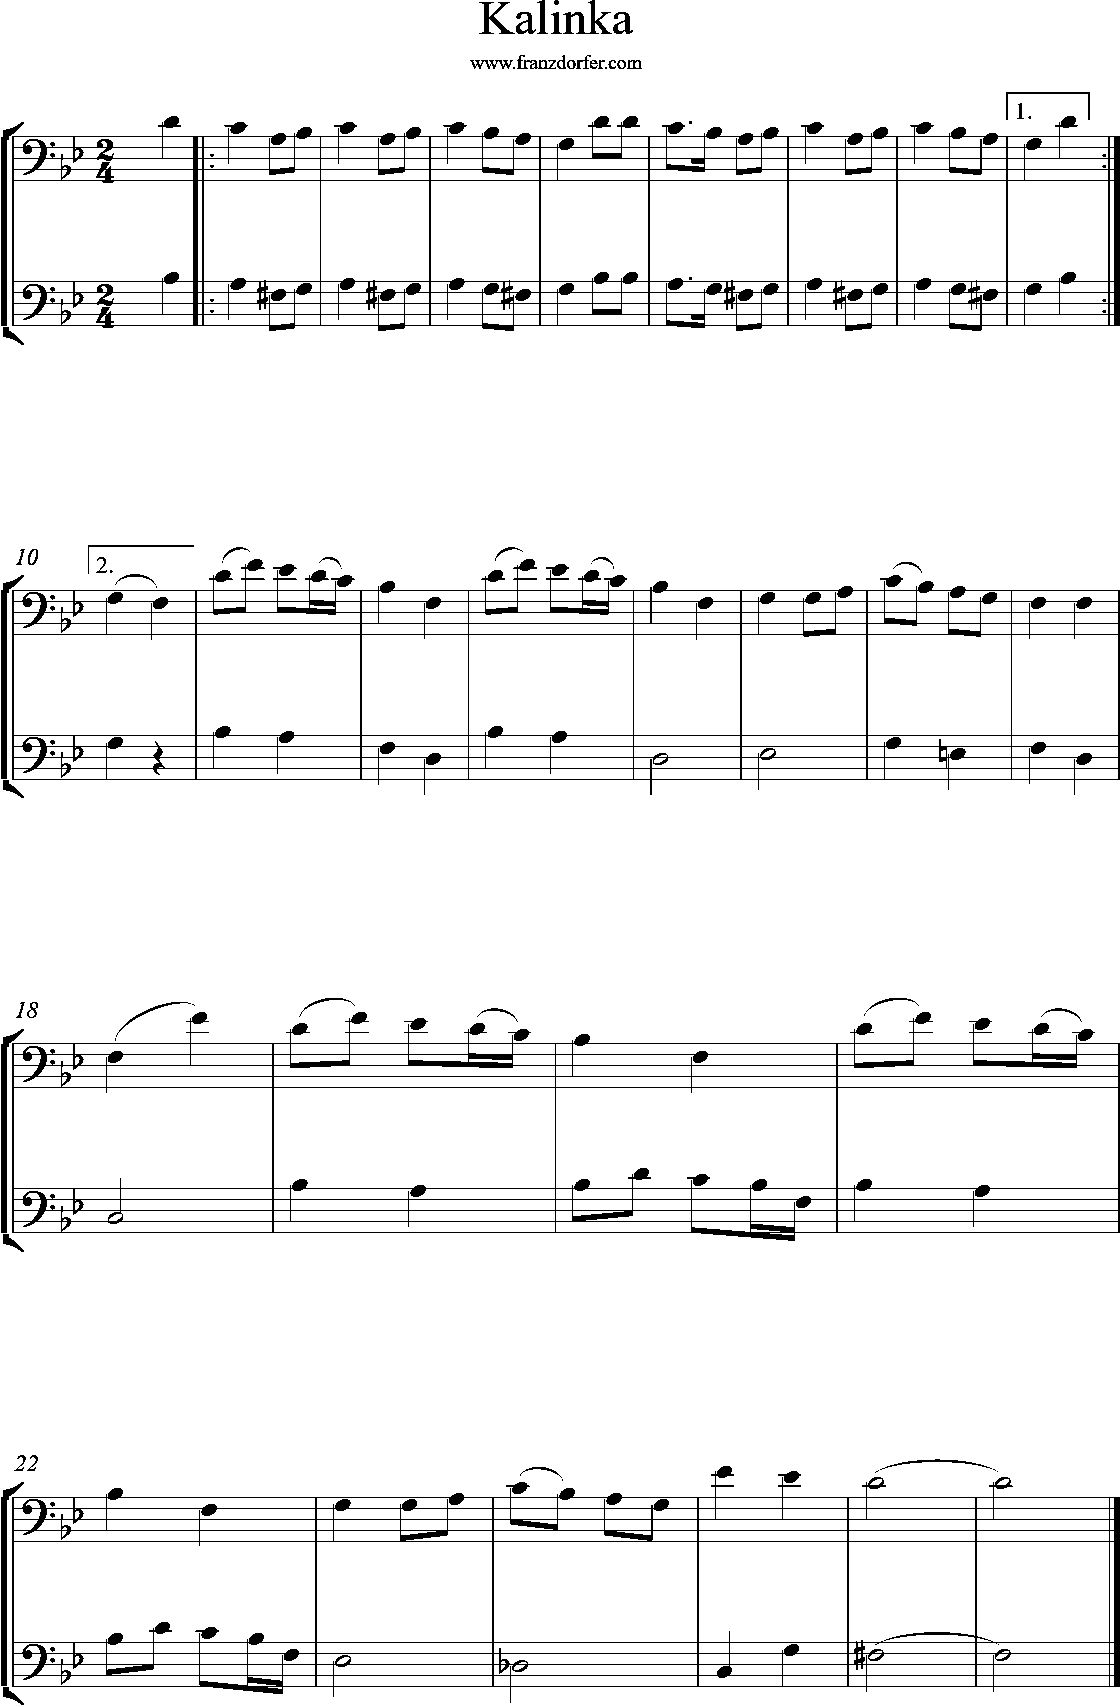 Bassschlüssel, noten Duo,Kalinka, g-minor